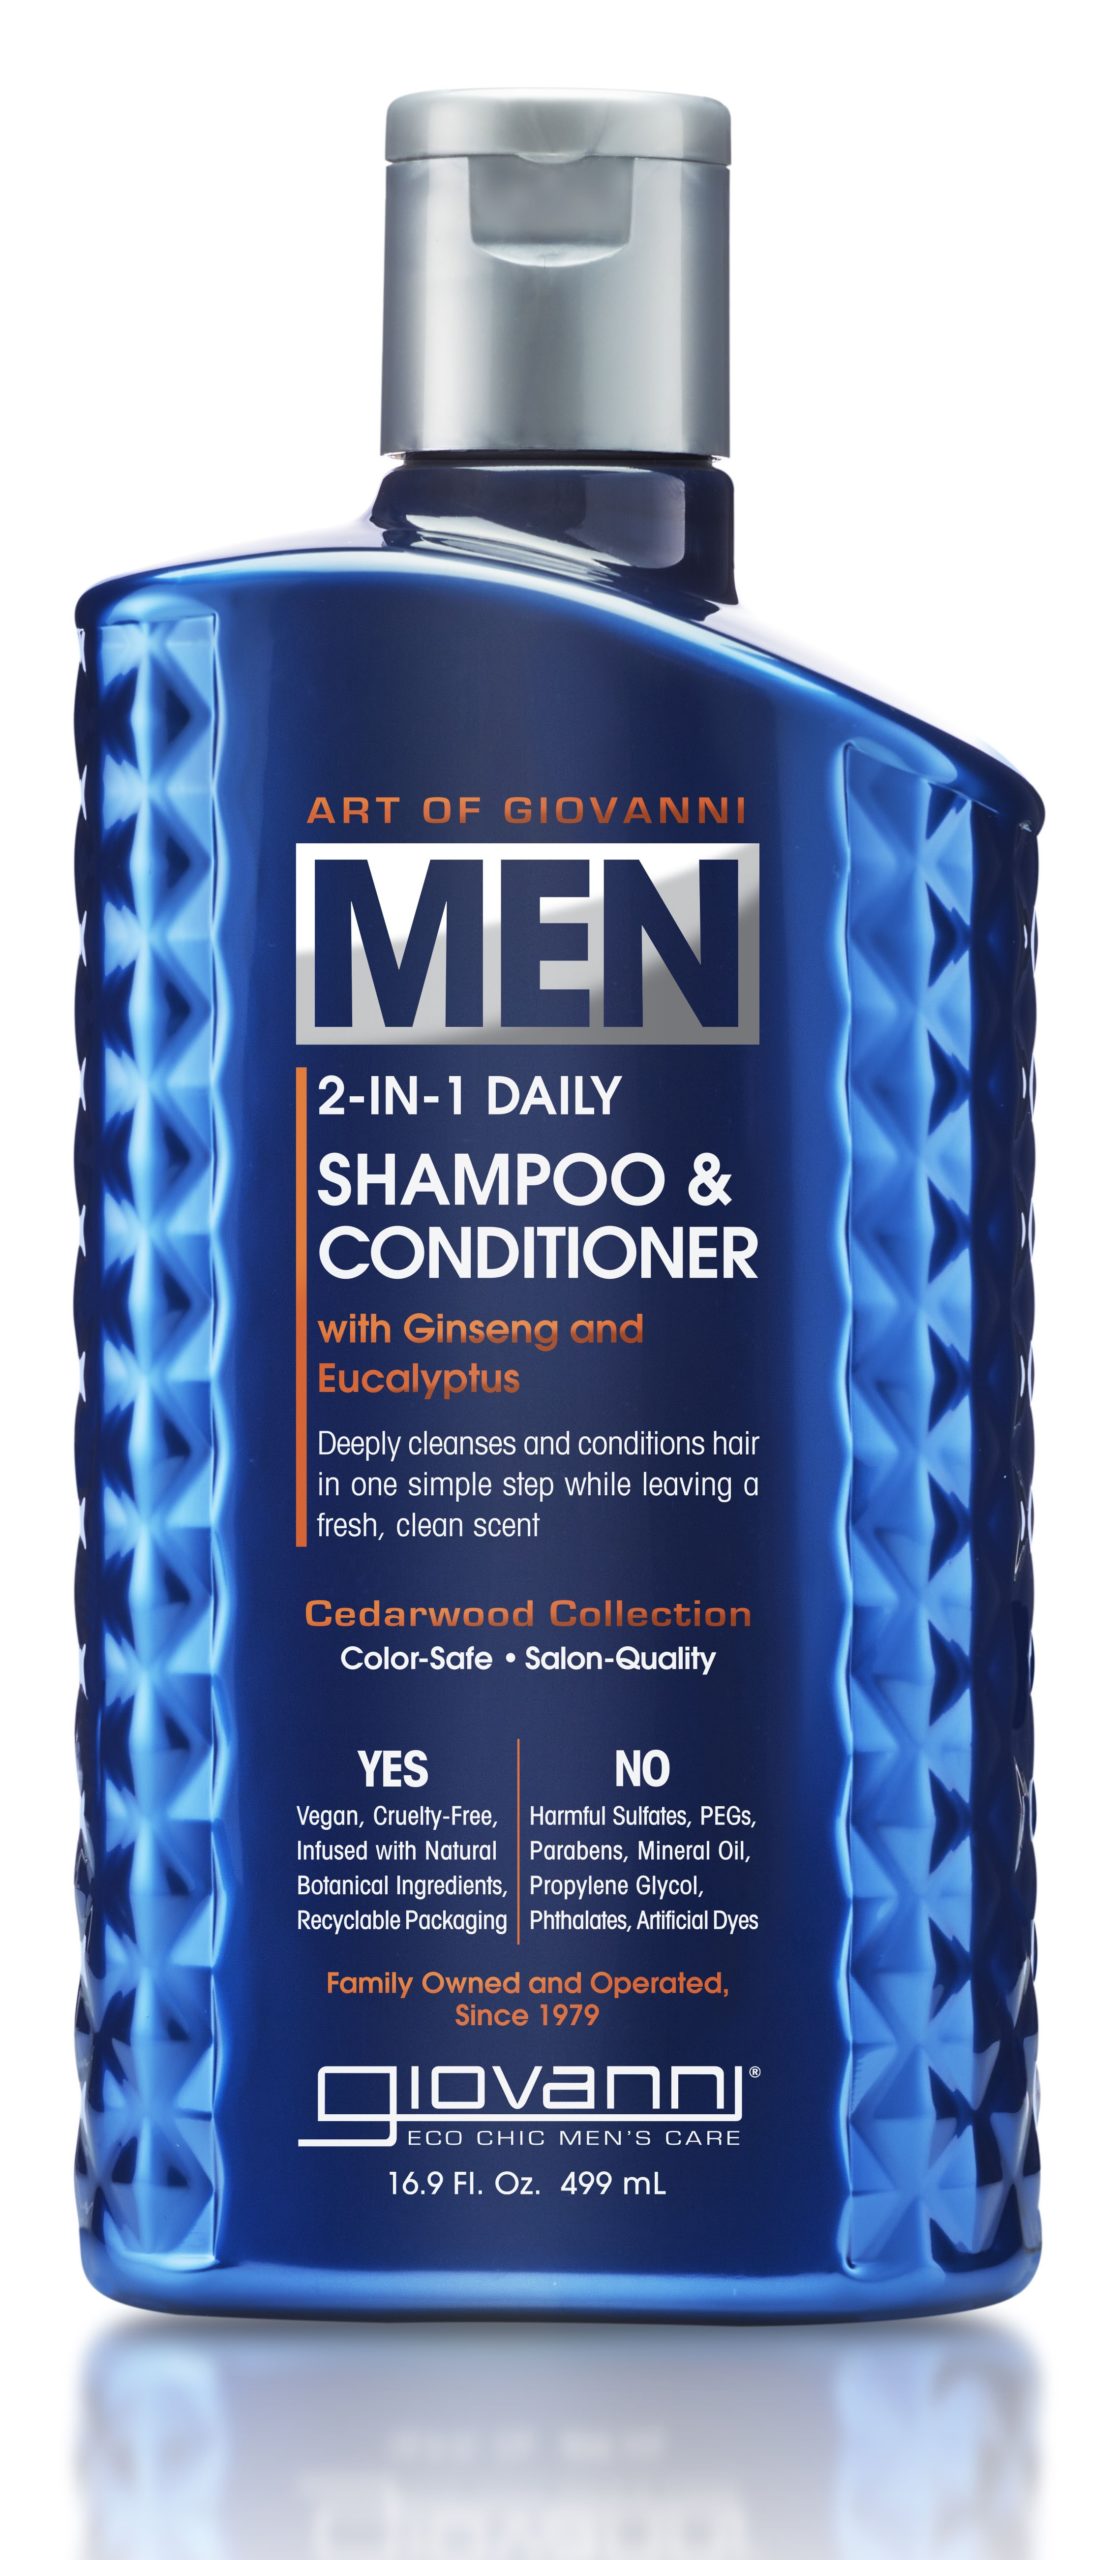 Men's 2-in-1 Daily Shampoo & Conditioner | Giovanni